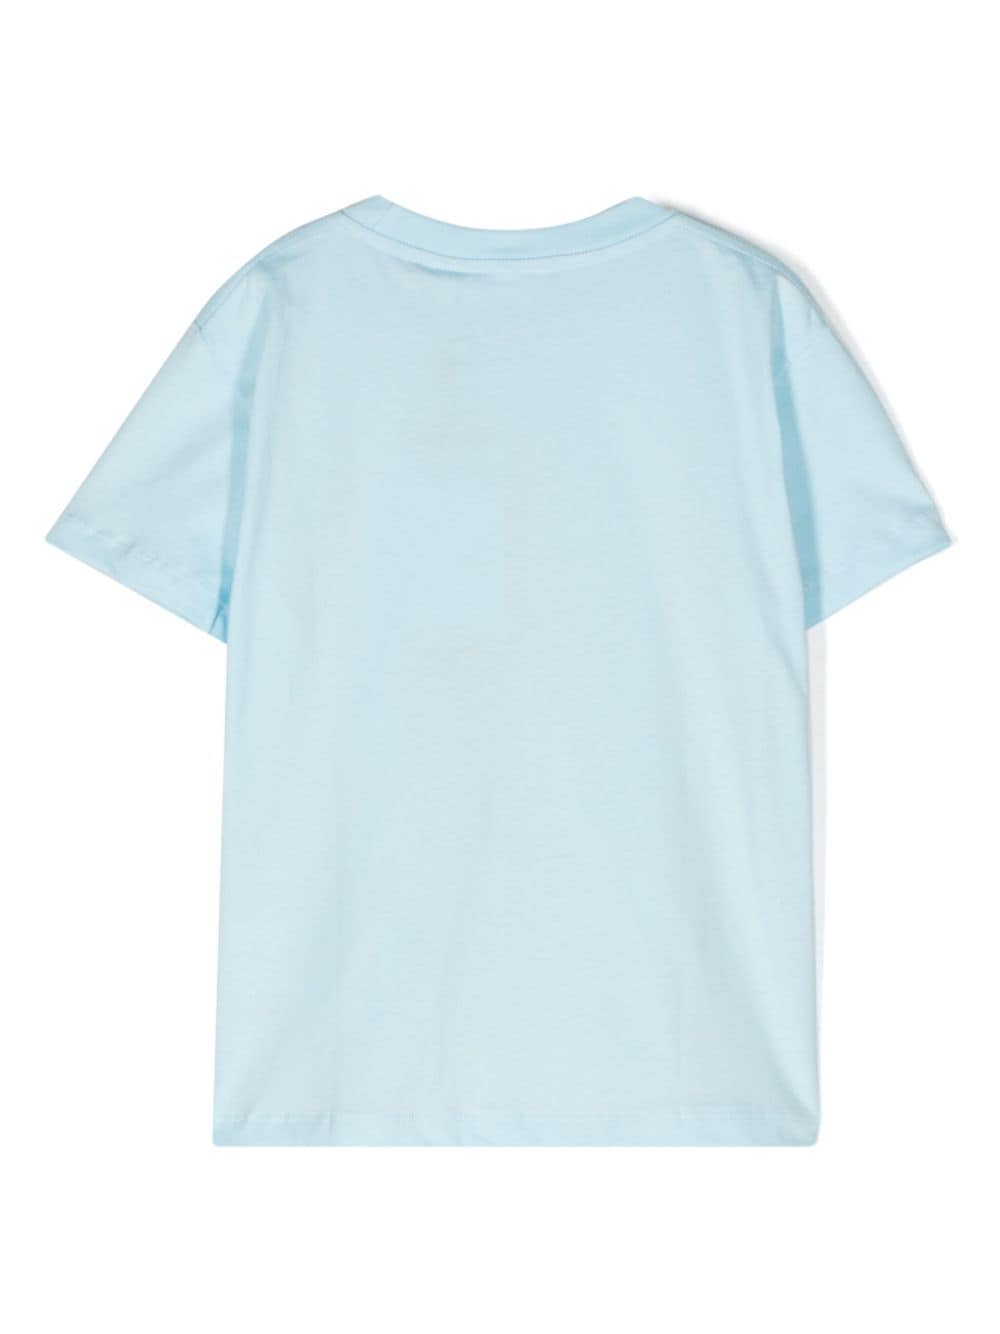 T-shirt azzurra bambino